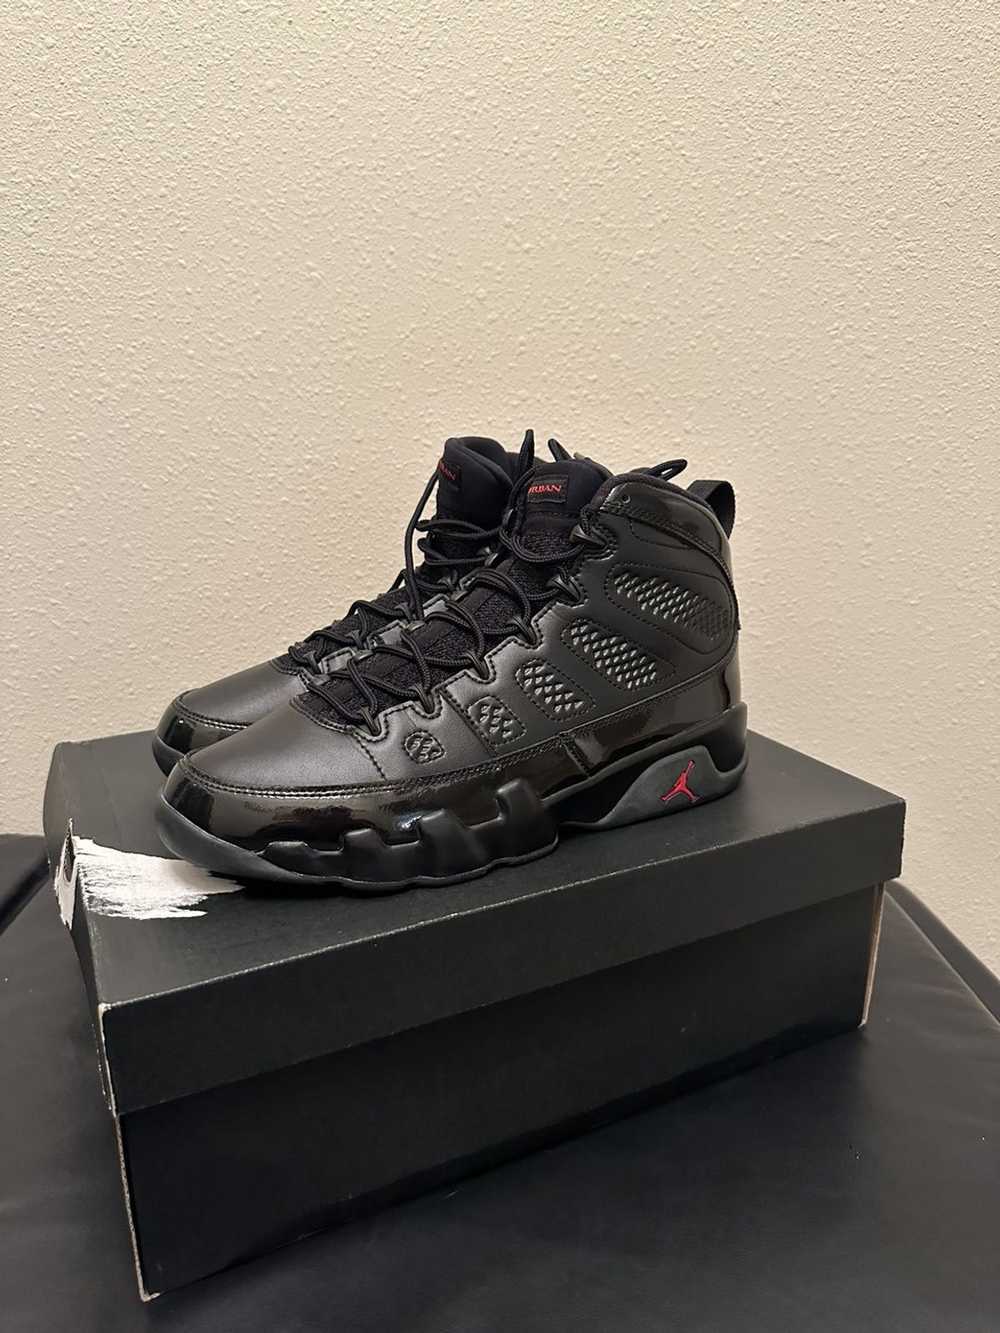 Jordan Brand × Nike Jordan 9 Retro Bred Patent - image 1